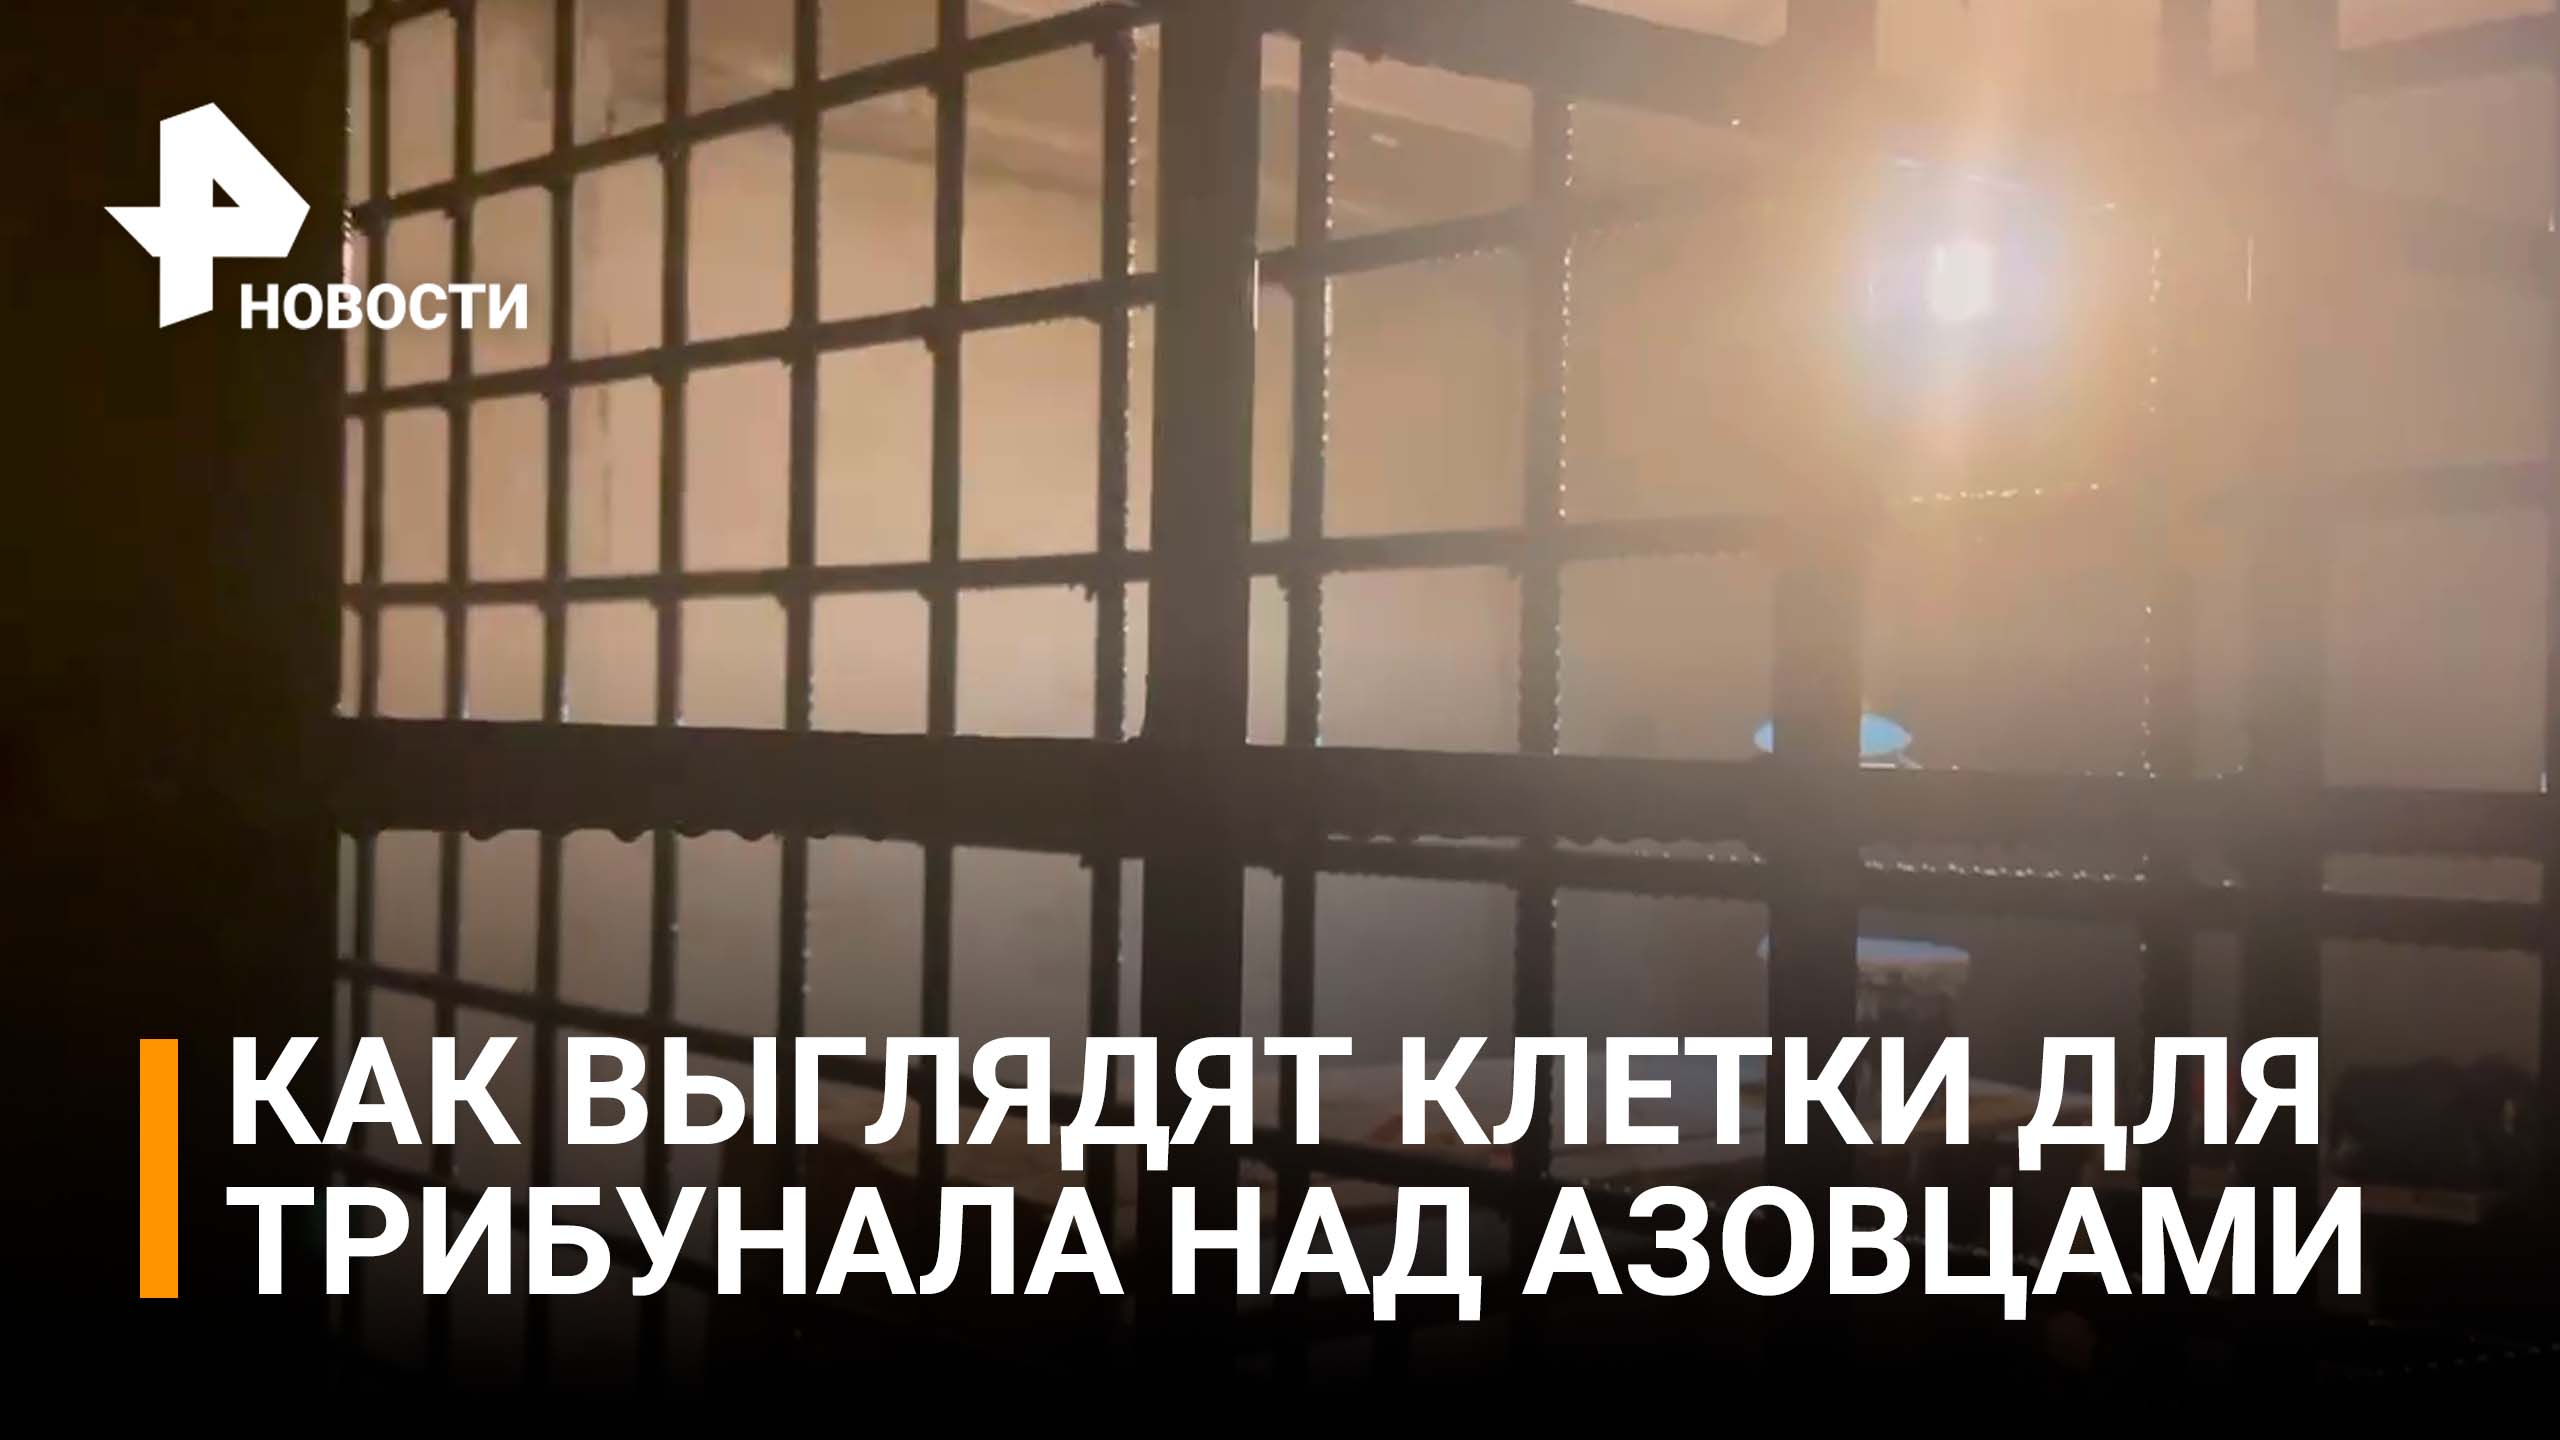 Клетки для азовцев* в подвале Мариупольской филармонии почти готовы / РЕН Новости